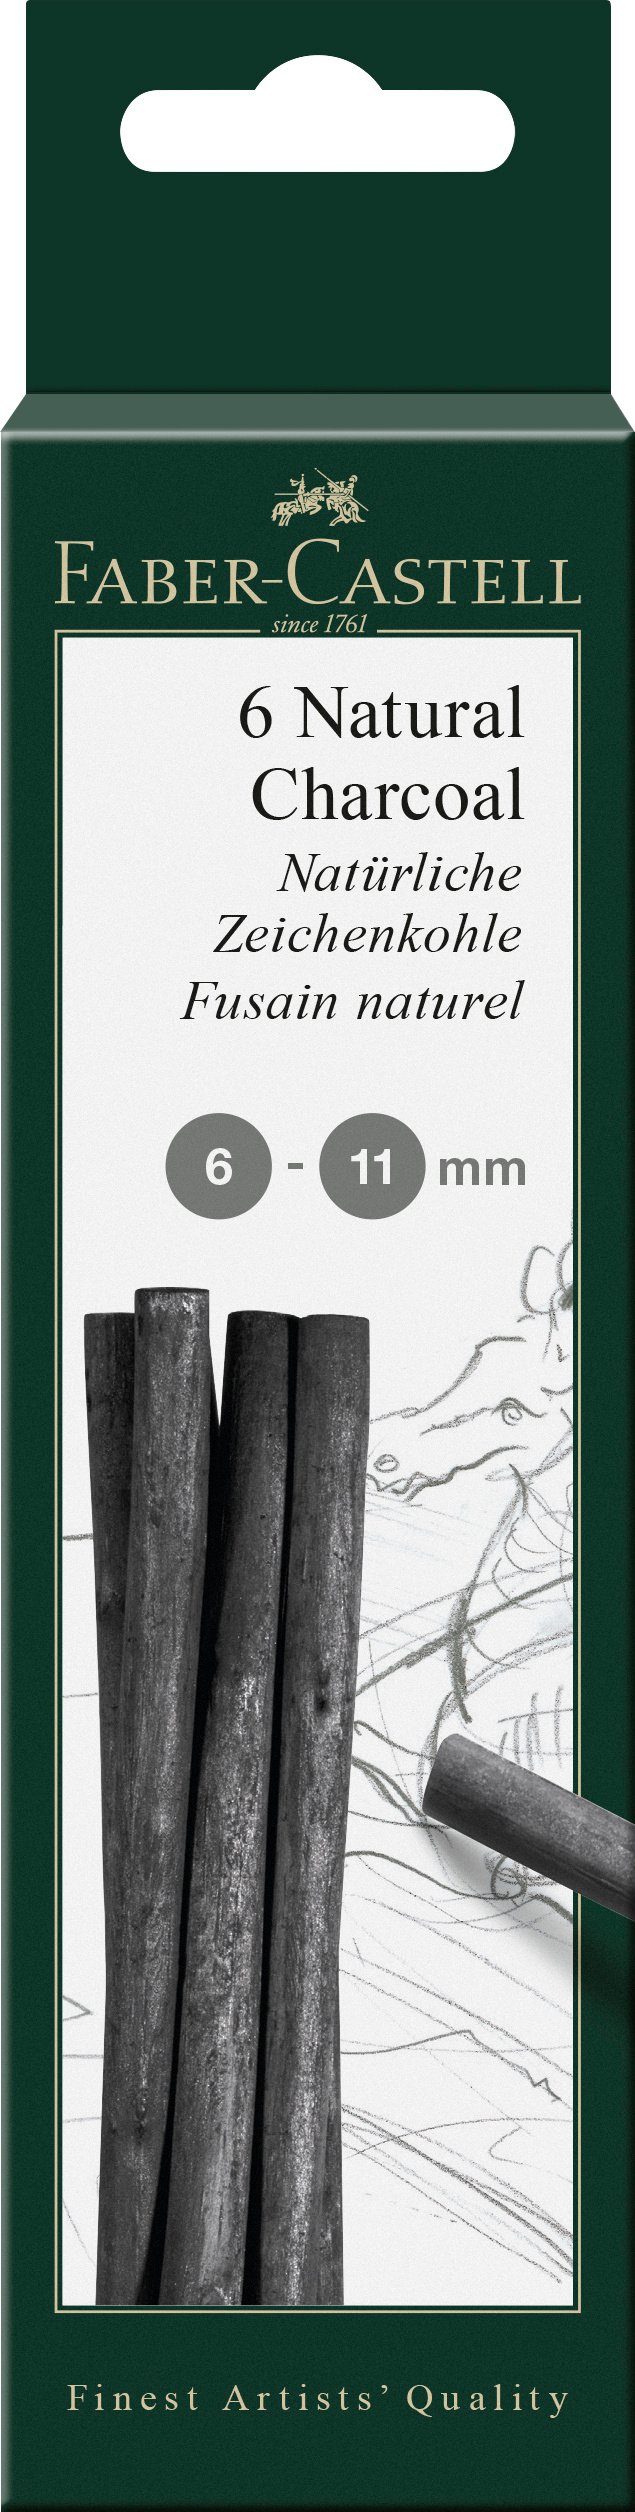 Faber-Castell Zeichenkohle 6-11mm natürlich, PITT Zeichenkohle